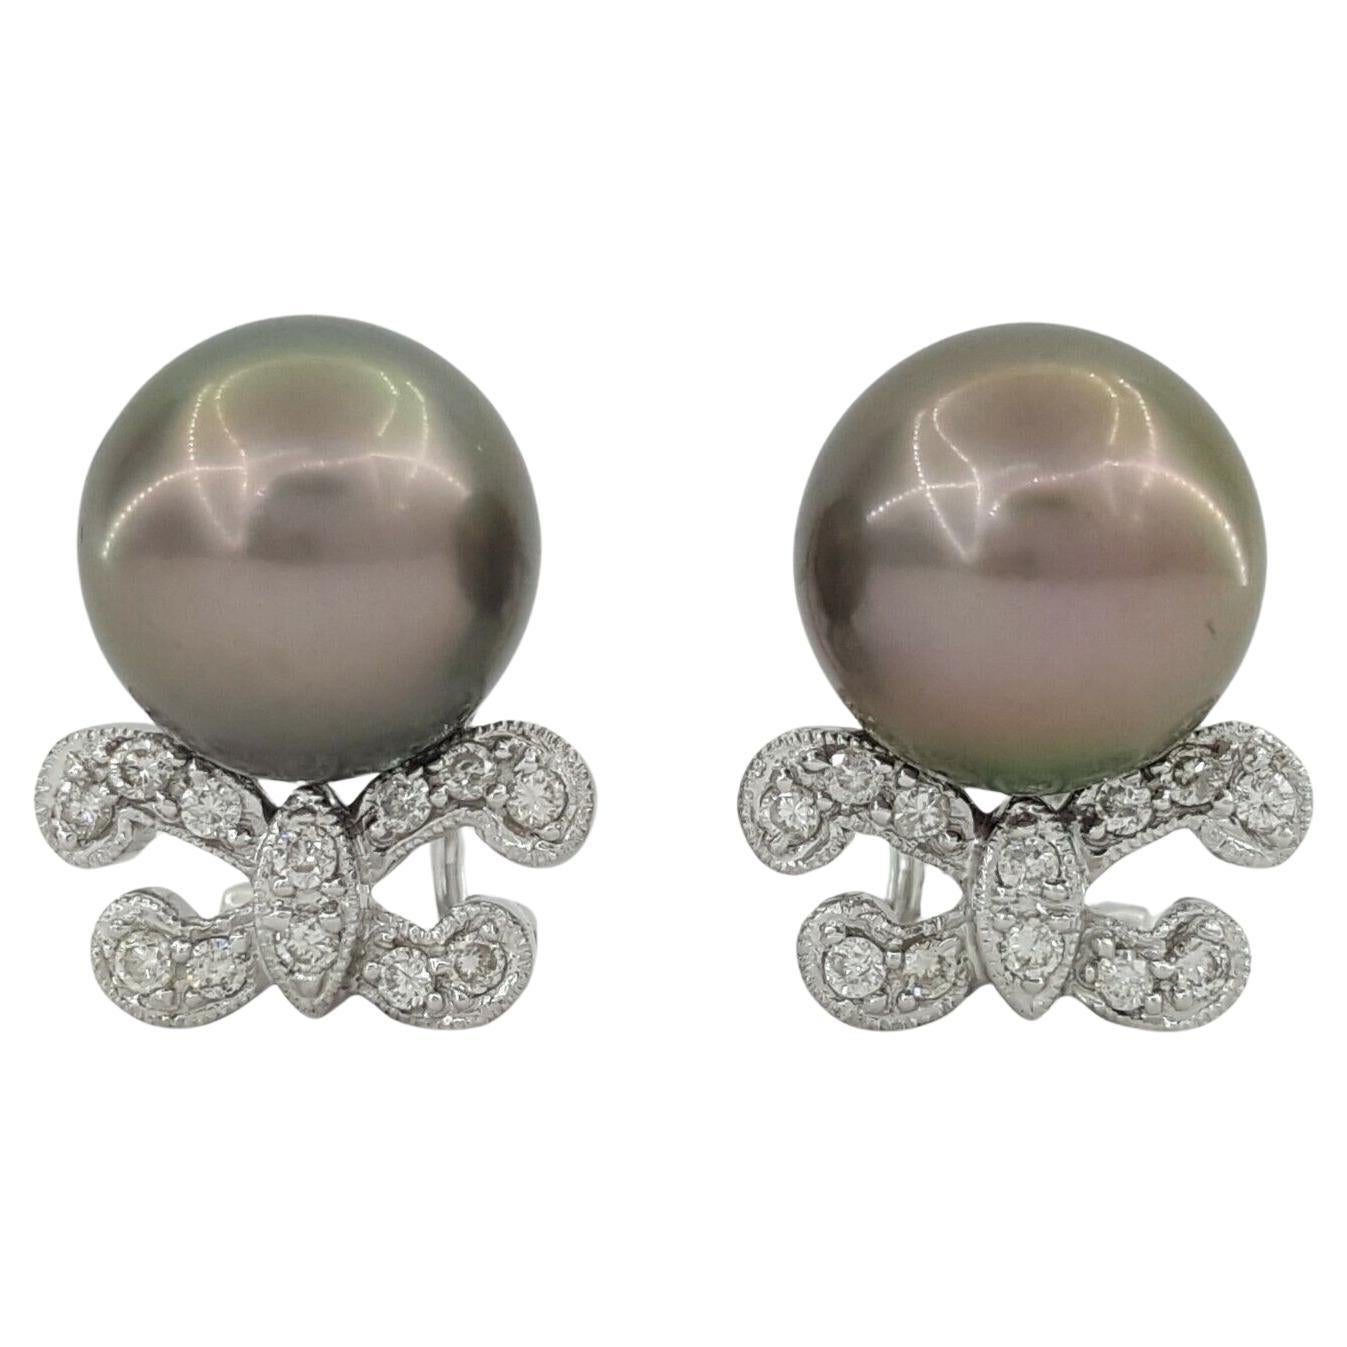 Boucles d'oreilles en or blanc 18K perles noires des mers du Sud et diamants